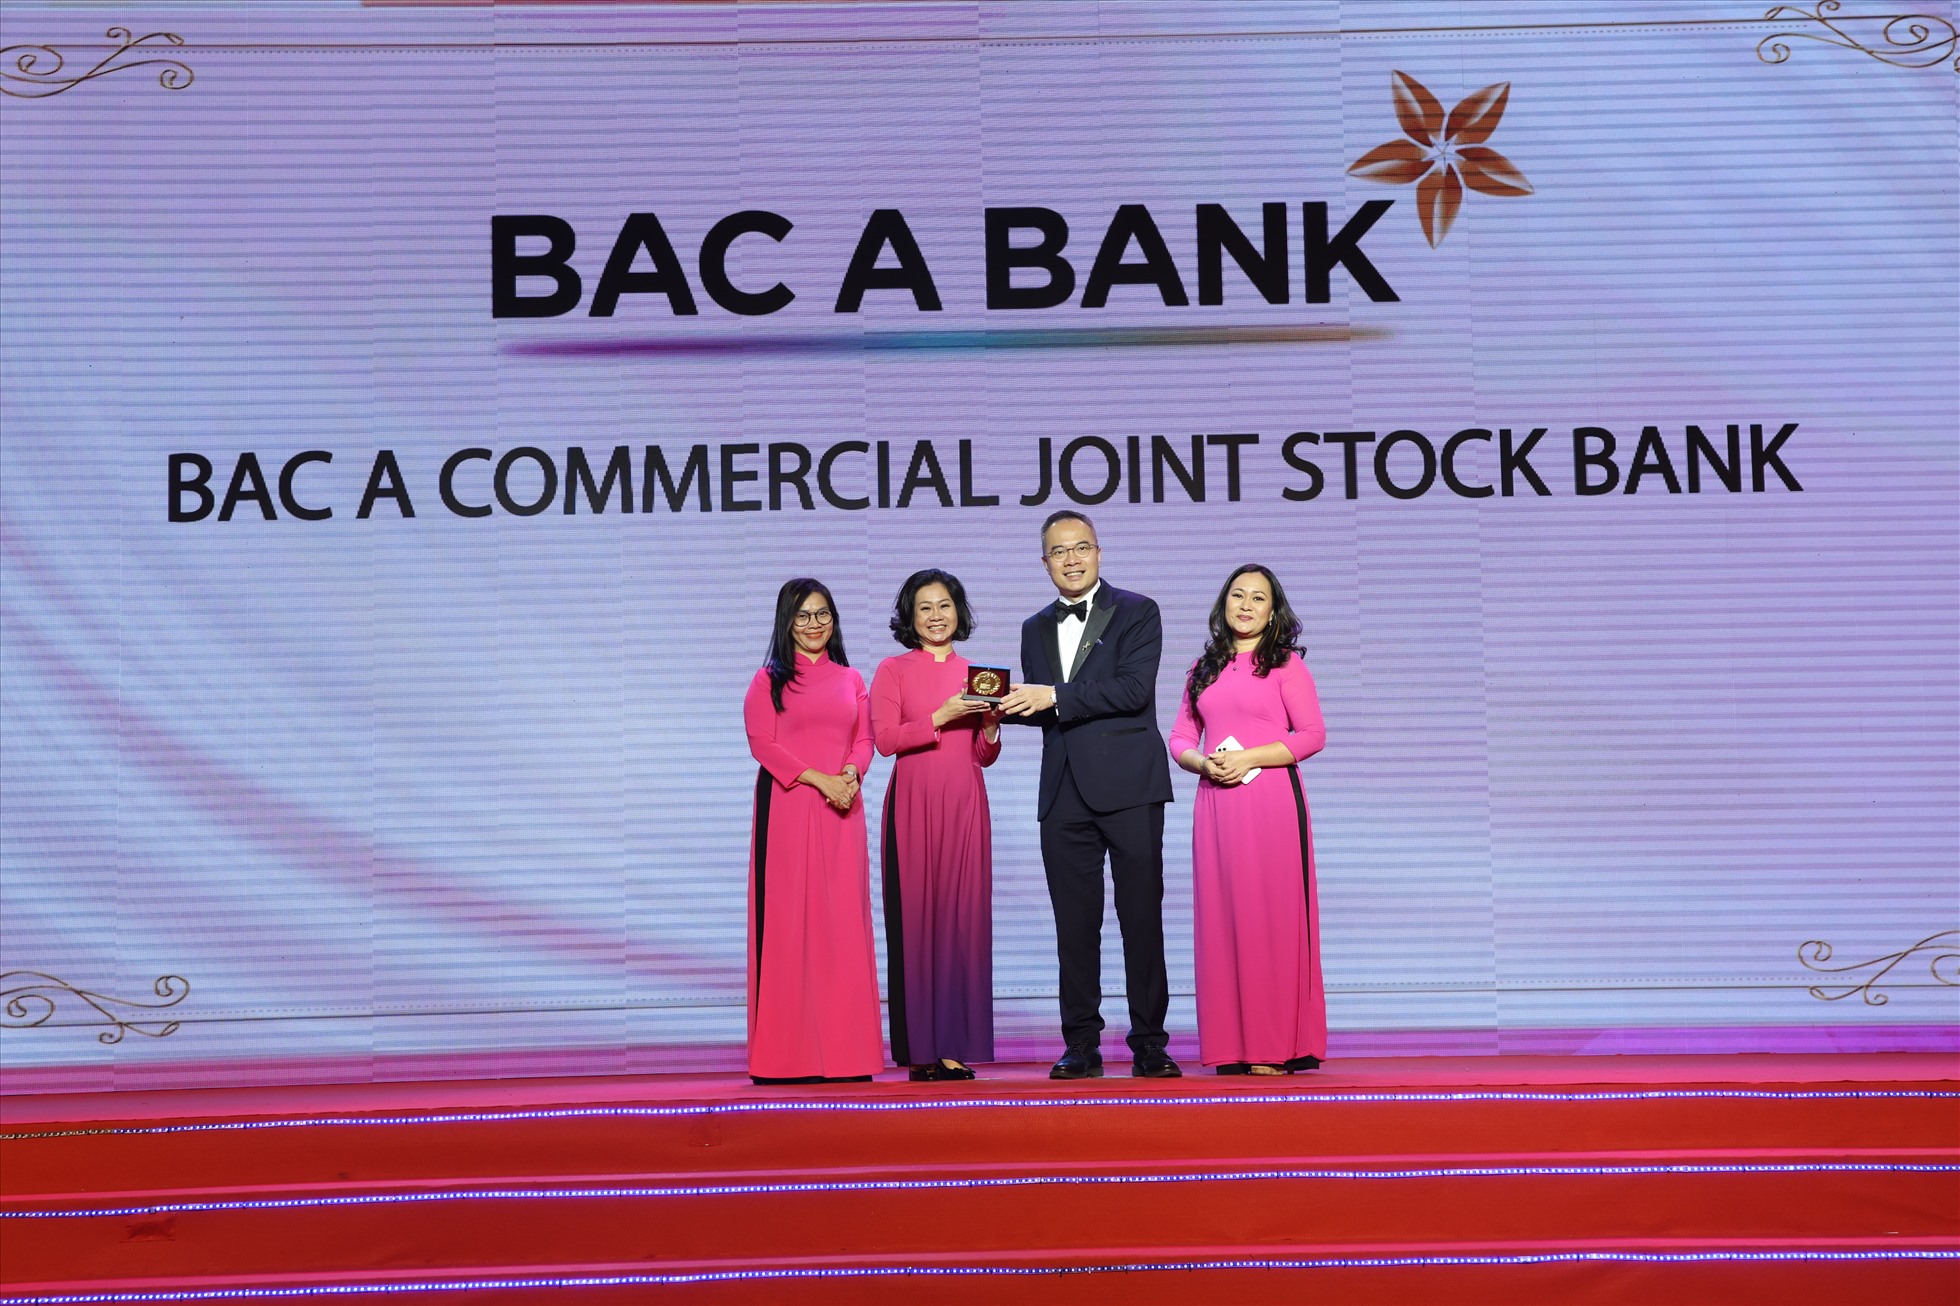 Với một trong năm giá trị cốt lõi “Vì Con người”, Bac A Bank đã vinh dự được công nhận là “Doanh nghiệp Quan tâm Chăm sóc Nhân viên tuyệt vời nhất”. Ảnh: Bac A Bank